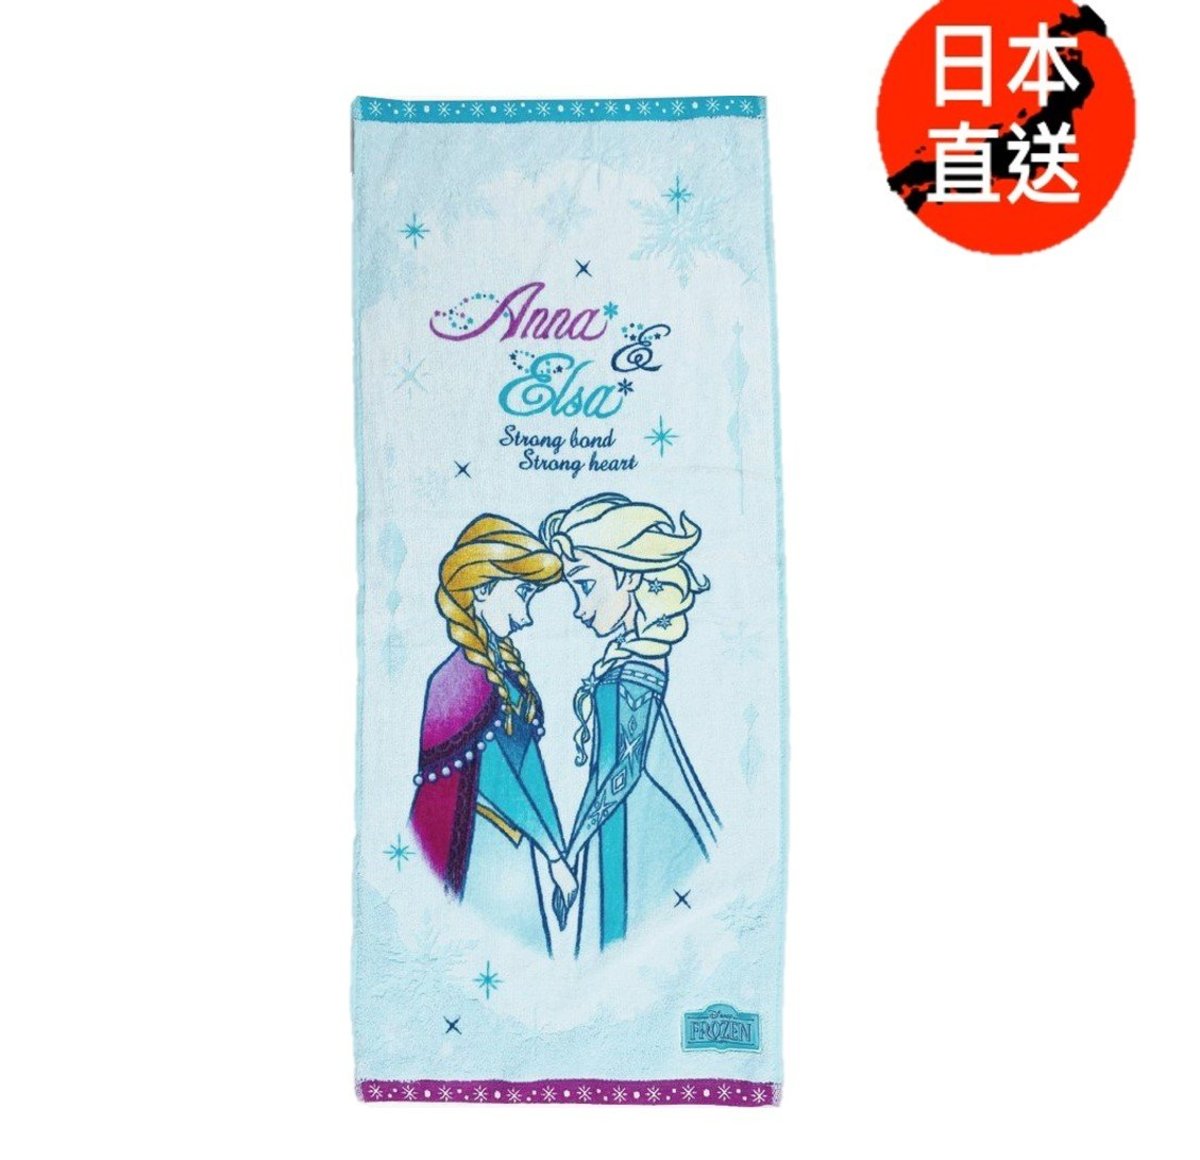 長臉巾(日本直送)(迪士尼許可產品)